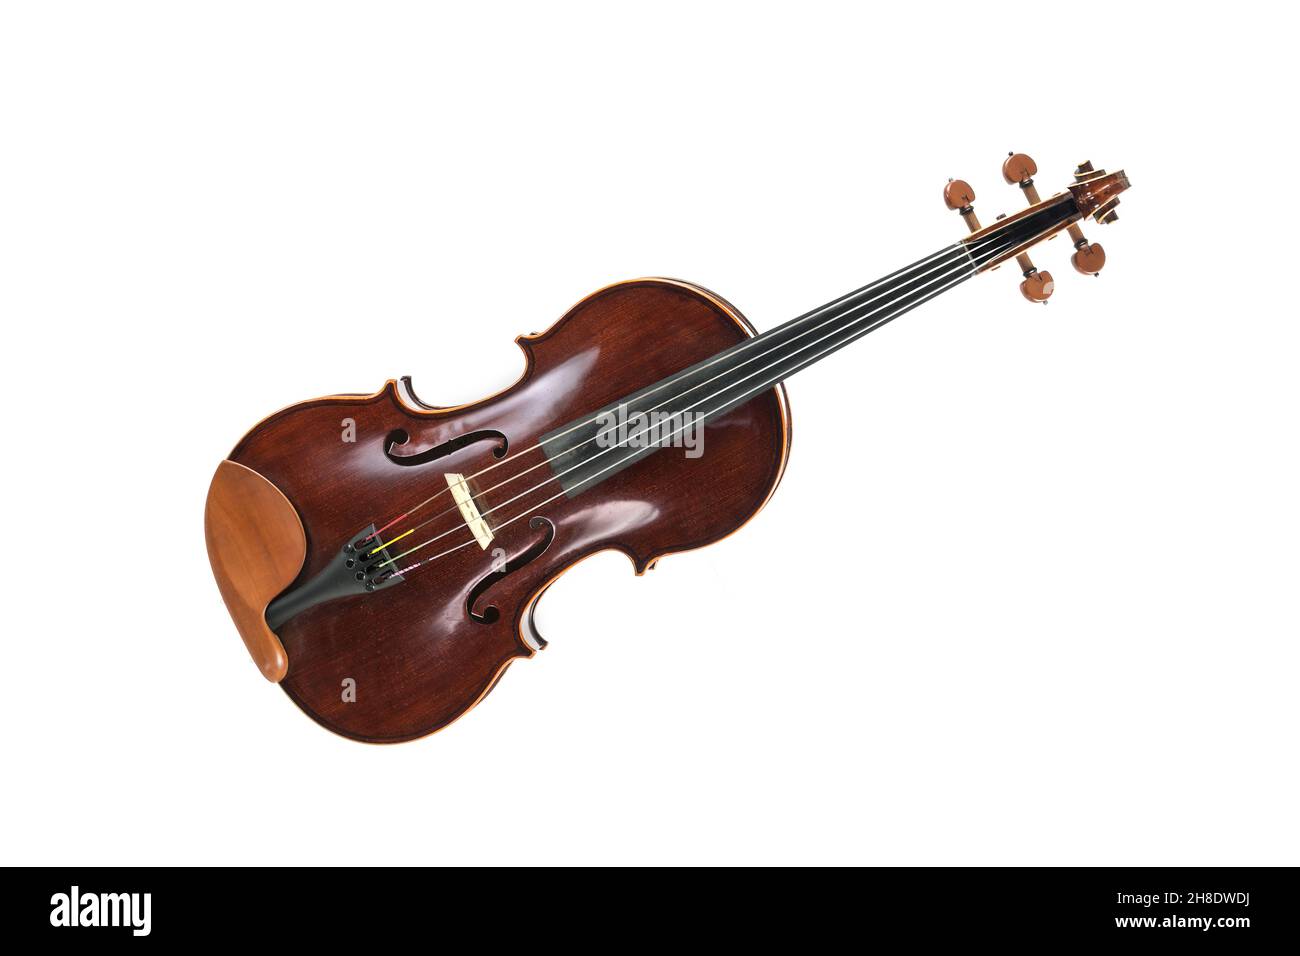 Viola, un instrumento musical de cuerda de la familia viol, utilizado en cuarteto de cuerdas, música de cámara y orquesta sinfónica, aislado en un backgroun blanco Foto de stock